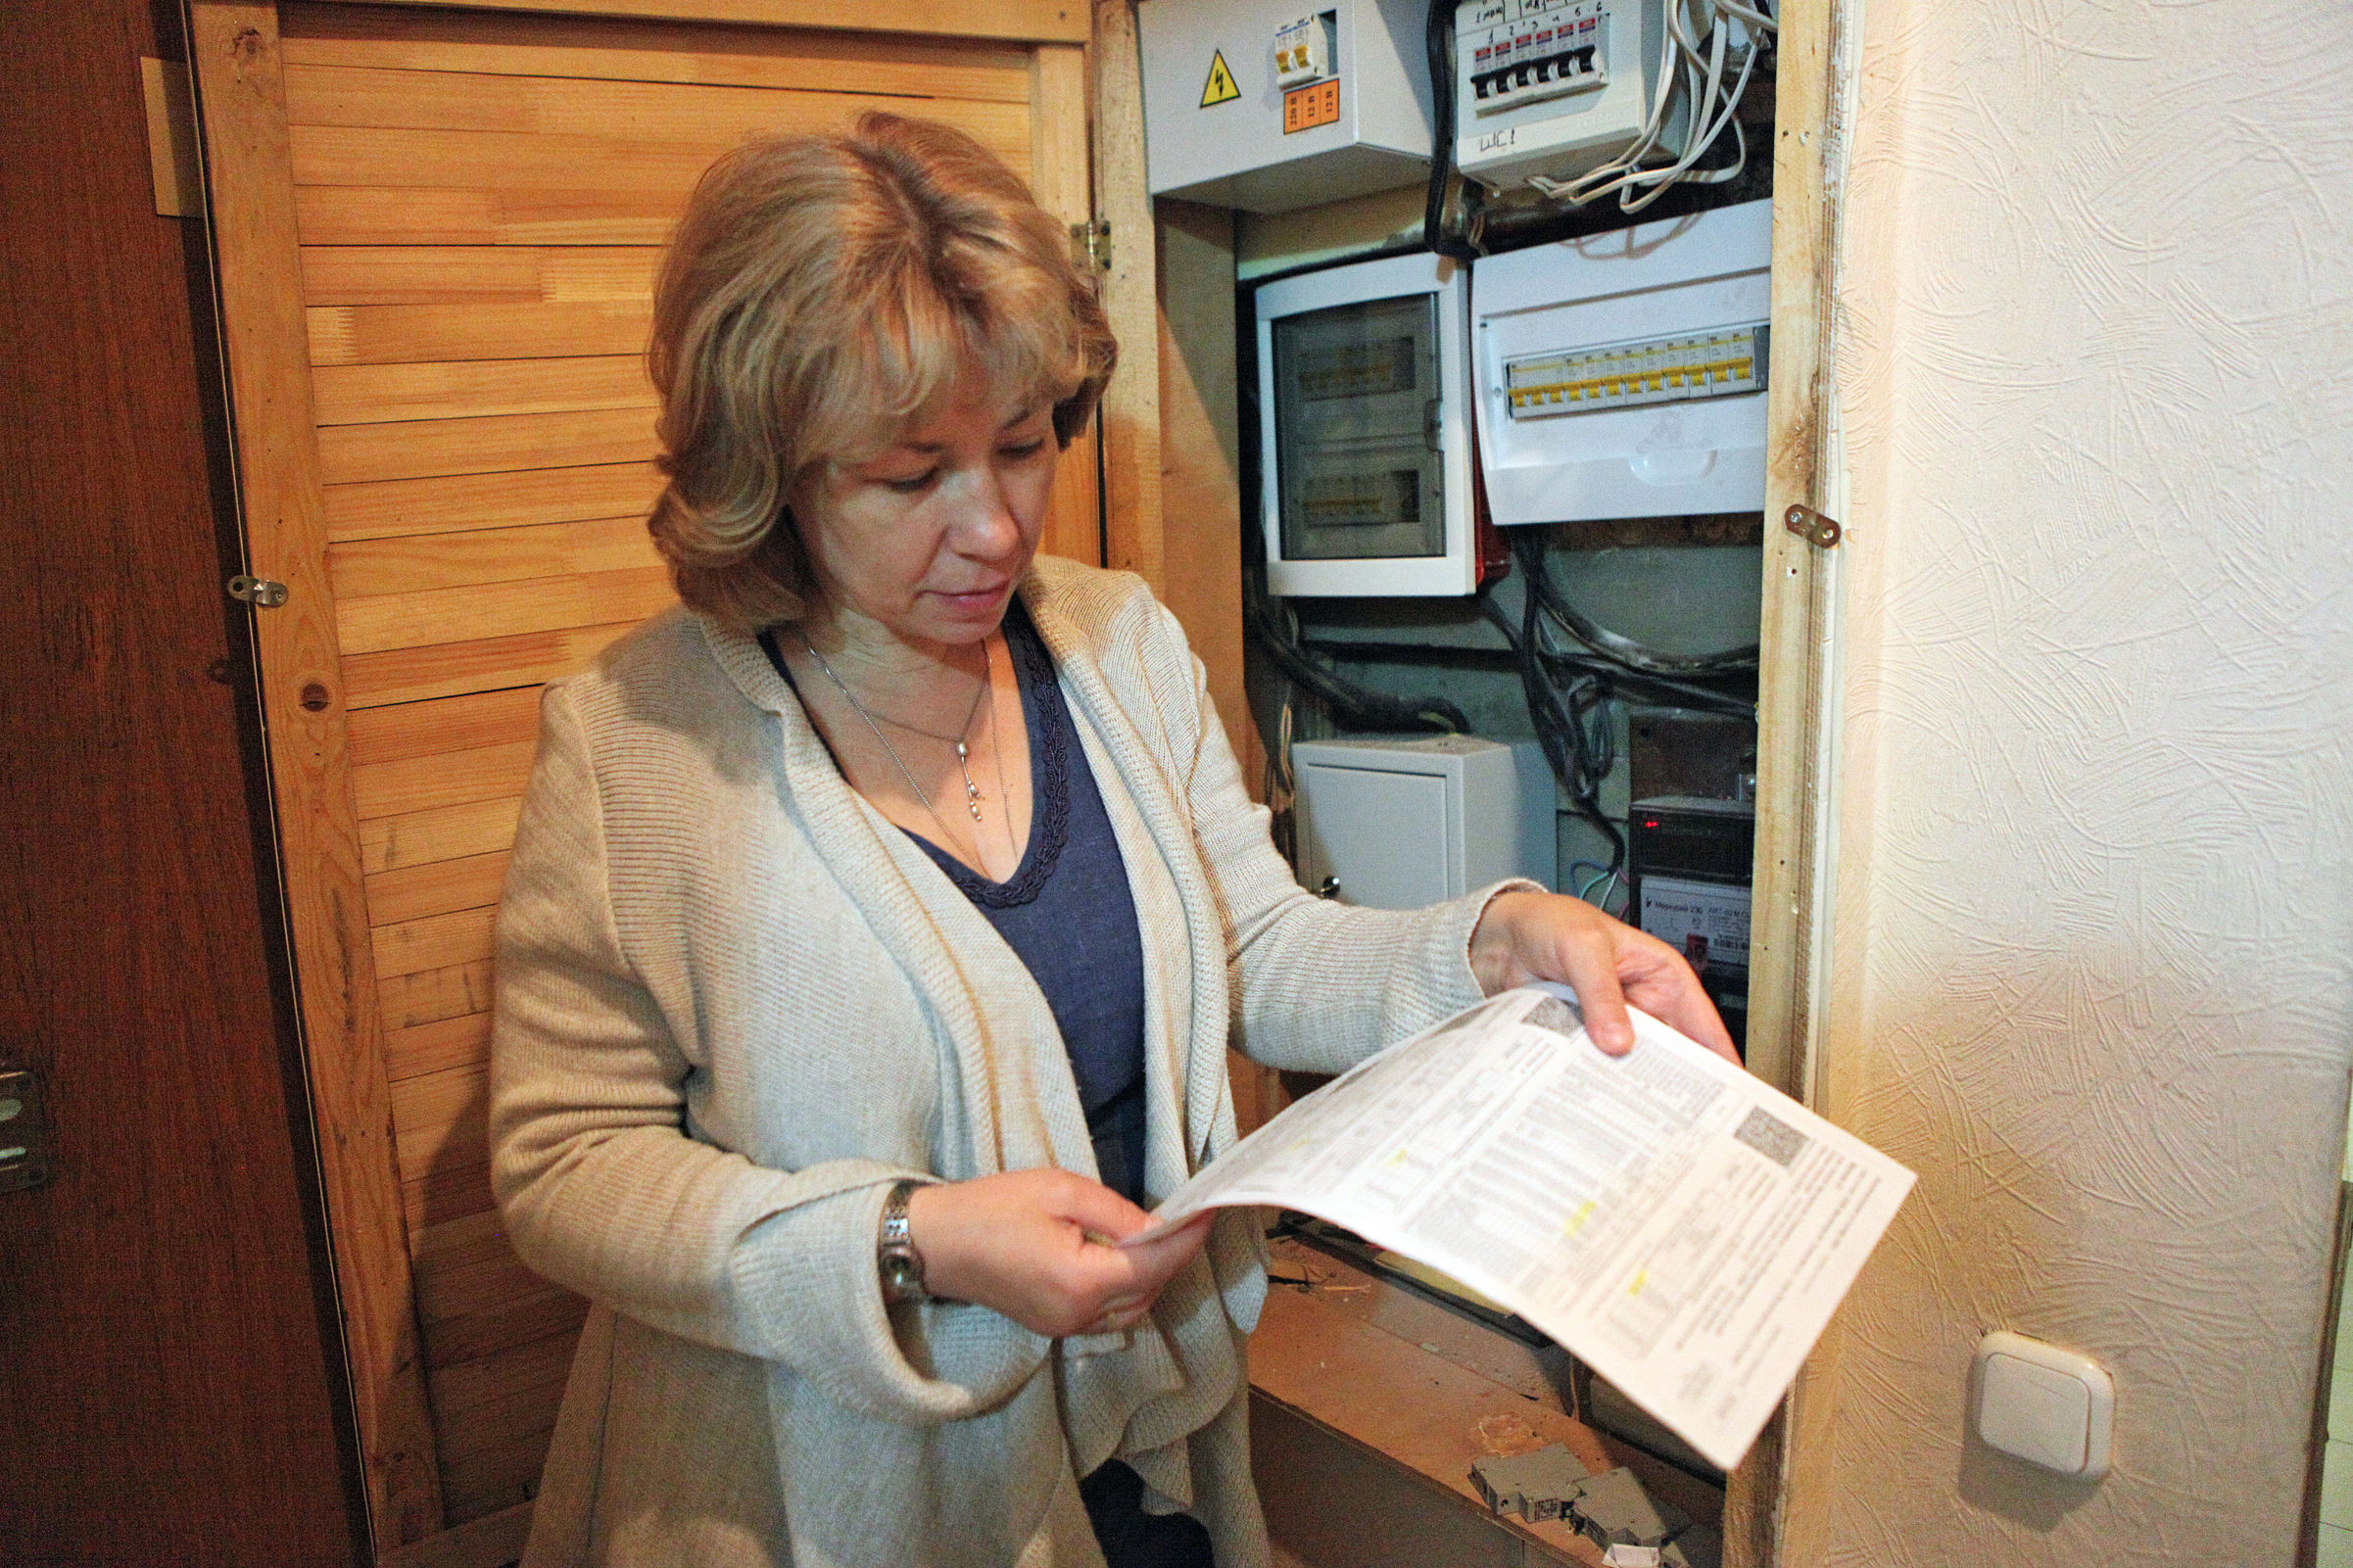 «ТНС-энерго Ярославль» рекомендует передать показания и оплатить счета за электроэнергию до изменения тарифов